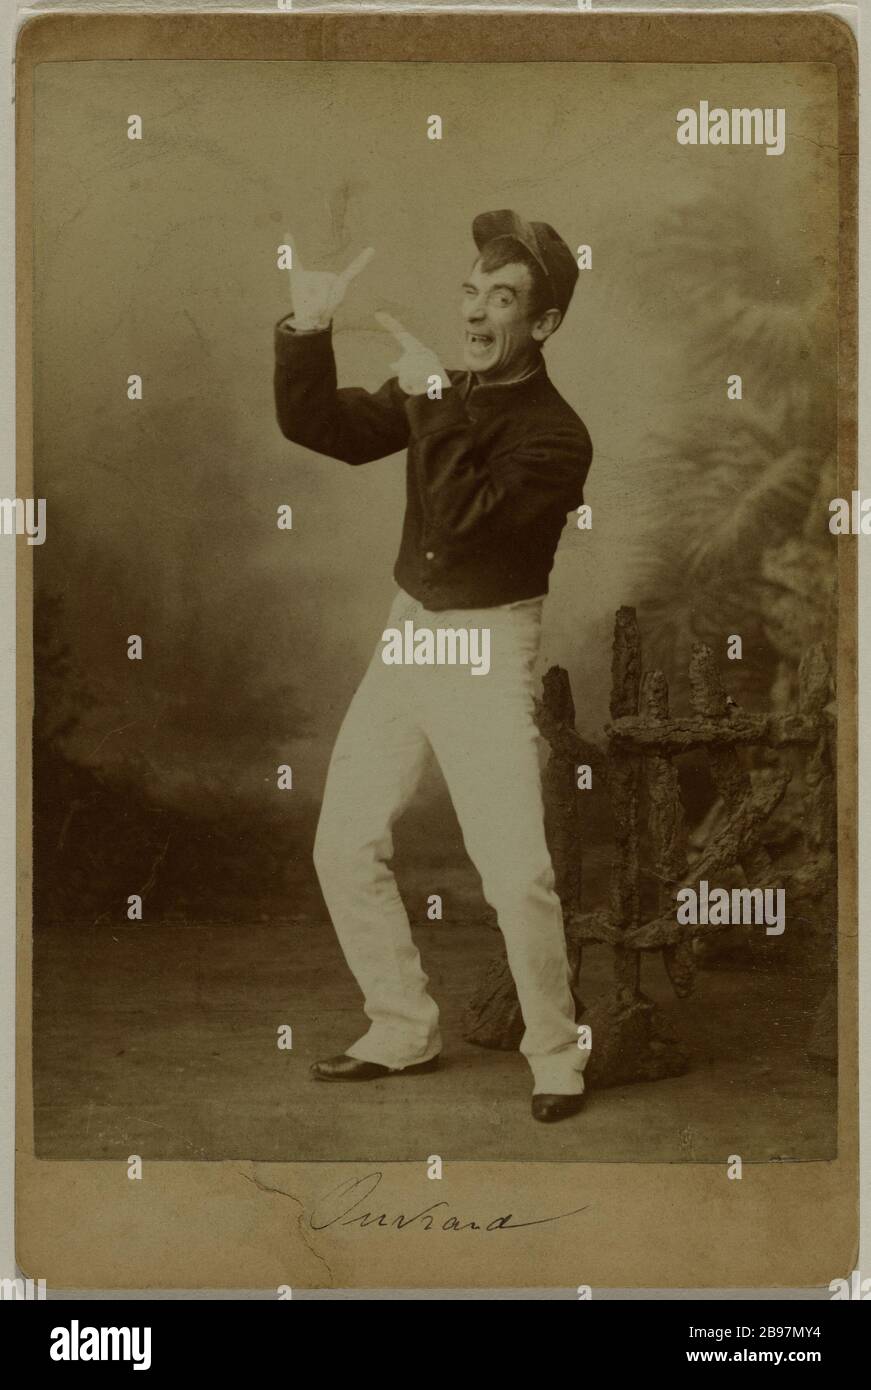 RITRATTO DI UN ATTORE Ritratto d'un comédien. Francia, 1856-1916. Anonima fotographie. Parigi, musée Carnavalet. Foto Stock